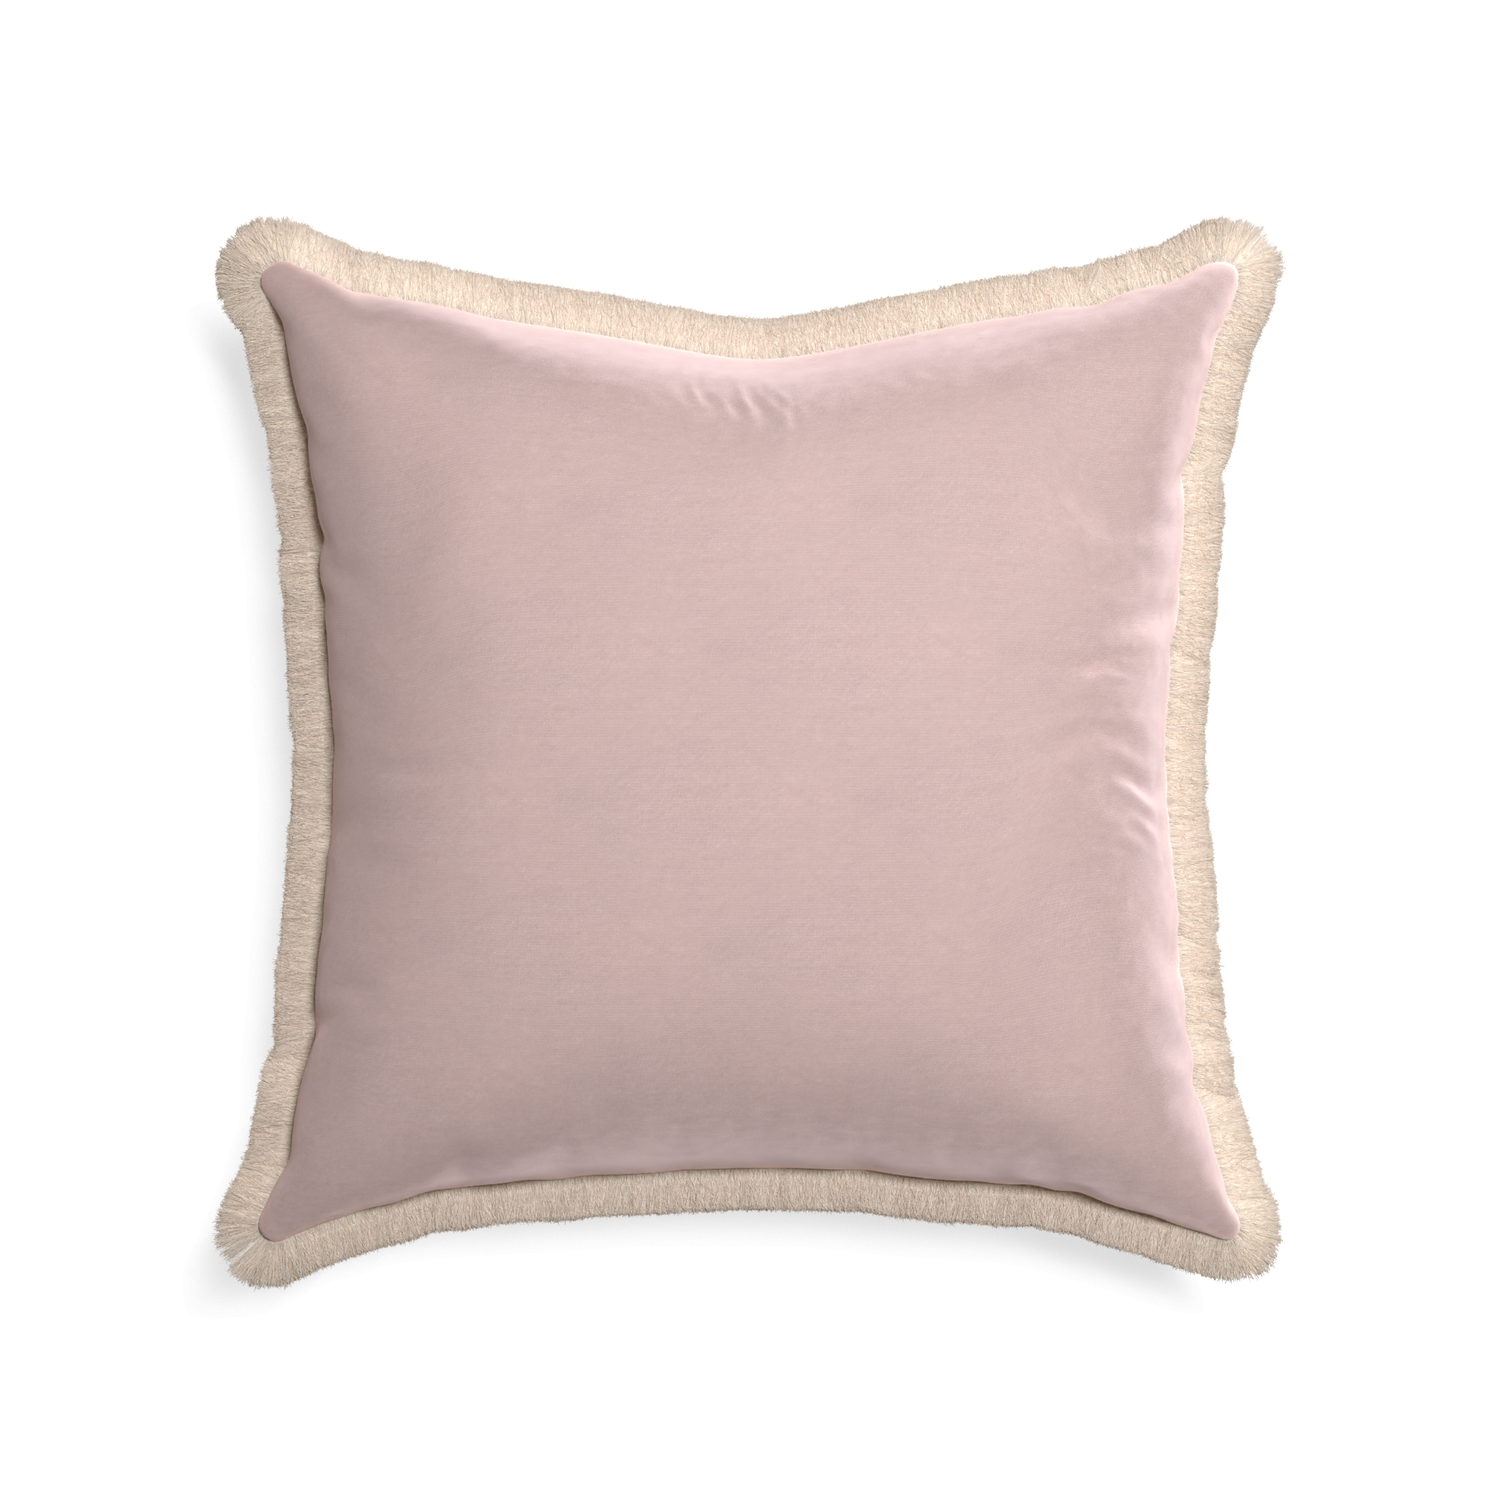 22-square rose velvet custom pillow with cream fringe on white background